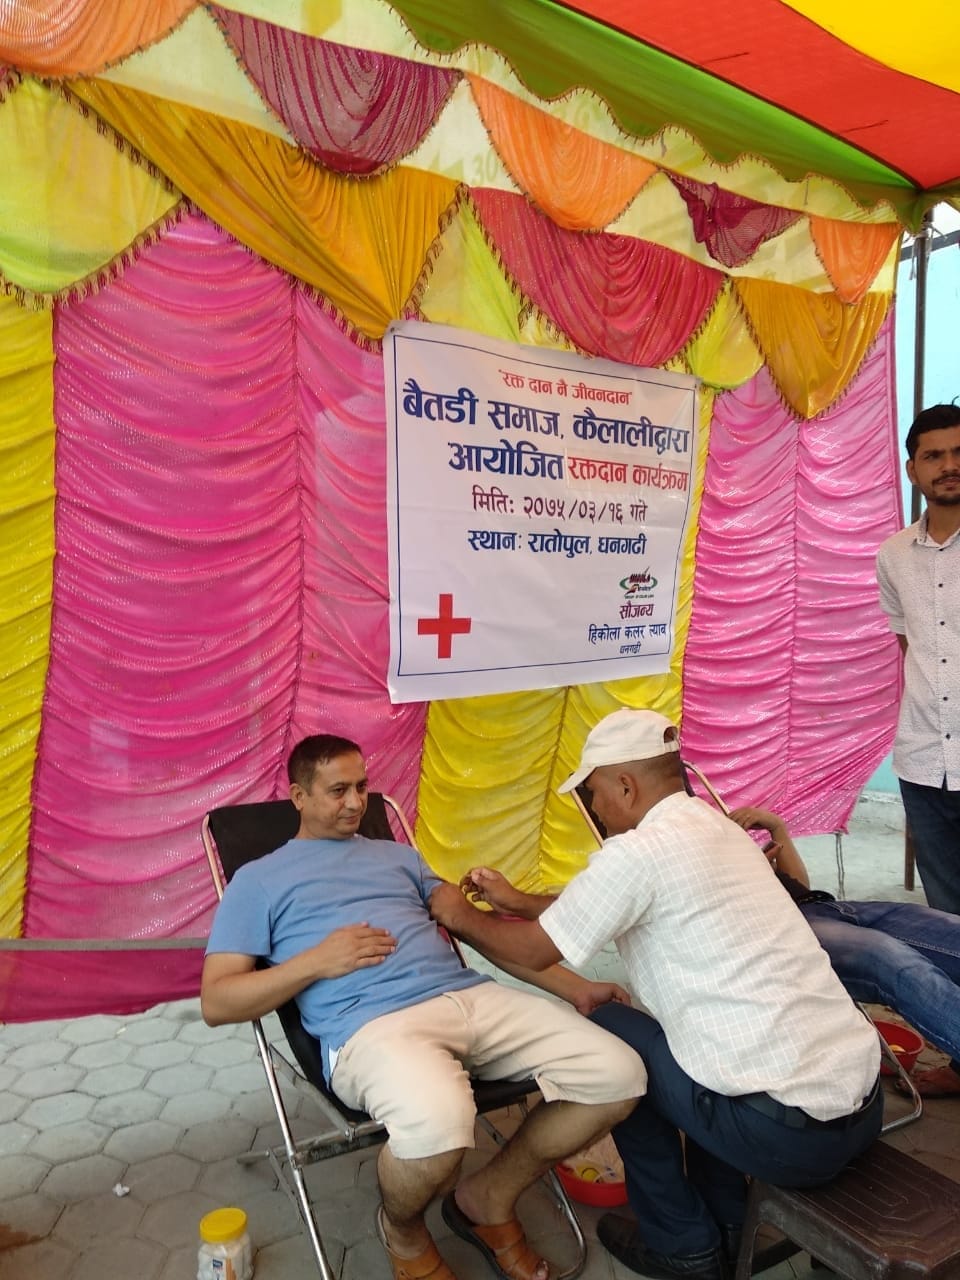 बैतडी समाज कैलालीले धनगढीमा आयोजना गरेको रक्तदान कार्यक्रम सम्पन्न